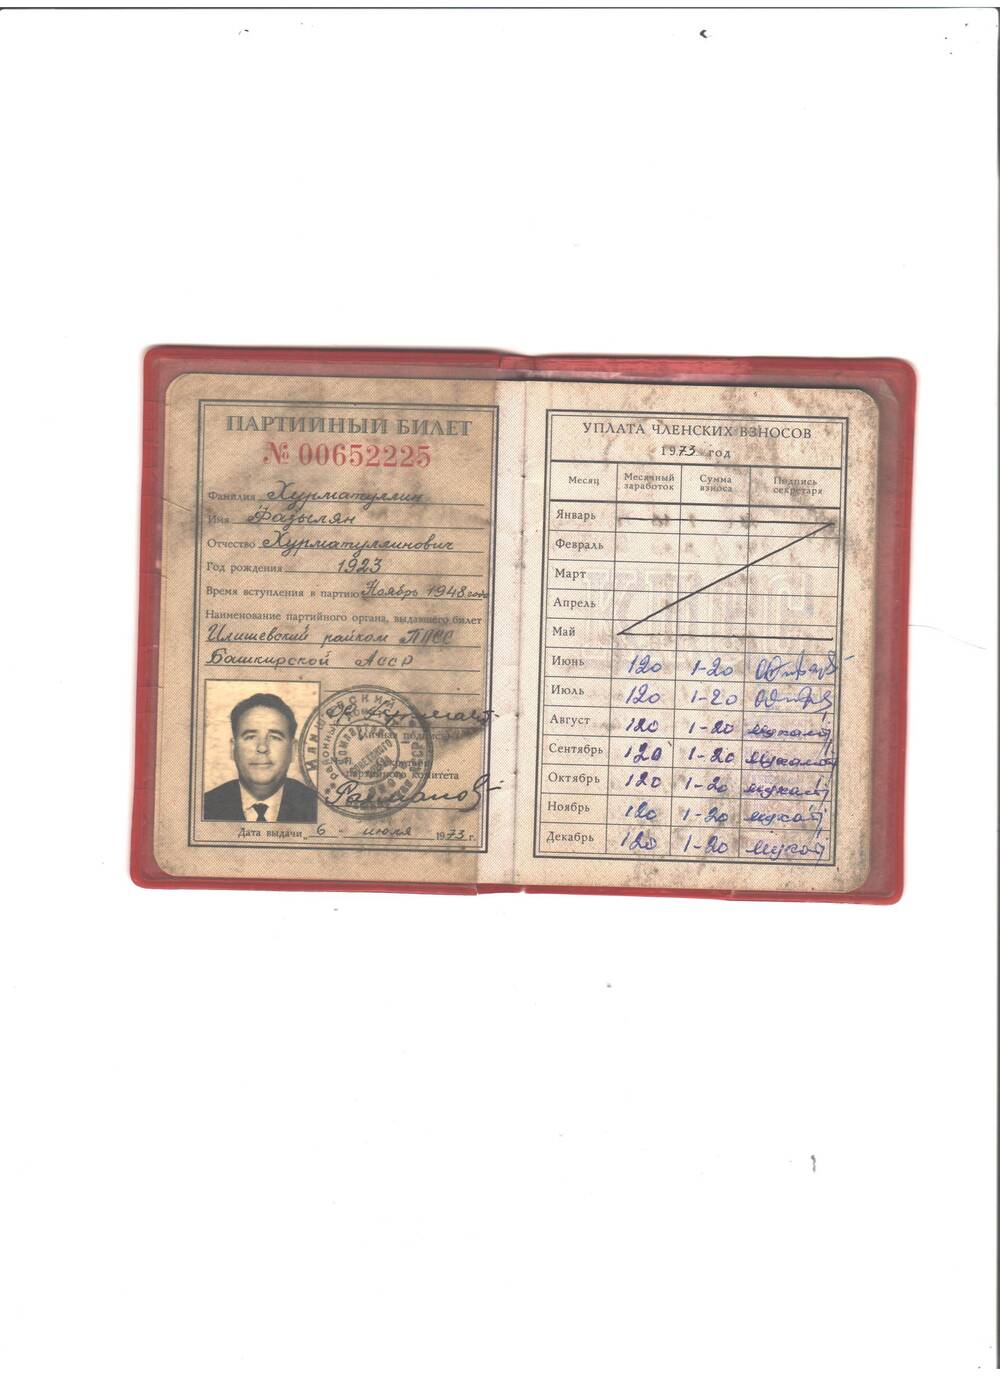 Билет партийный, № 00652225. Члена Коммунистической партии Советского Союза Хурматуллина Фазыляна Хурматуллиновича. Дата выдачи 6 июля 1973 года. Обложка красного цвета. Имеется фото.